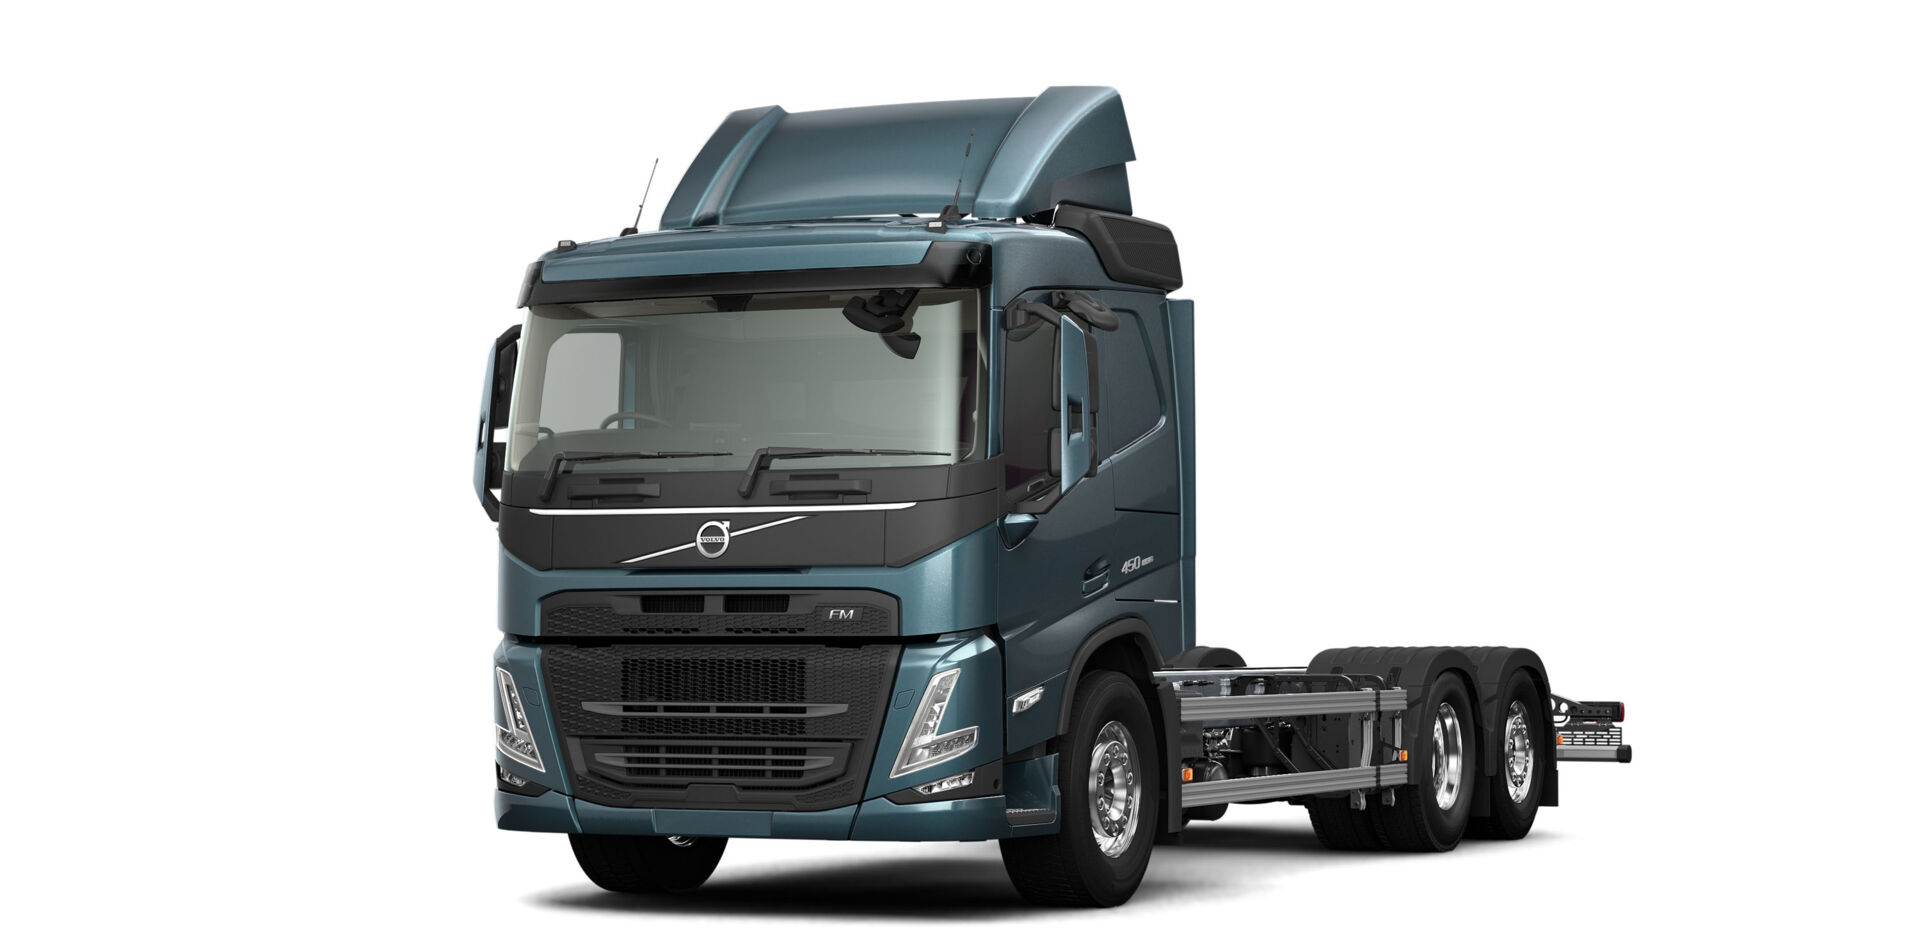 LVS-Bedrijfswagens_Renault Trucks Experience Centre (14)_